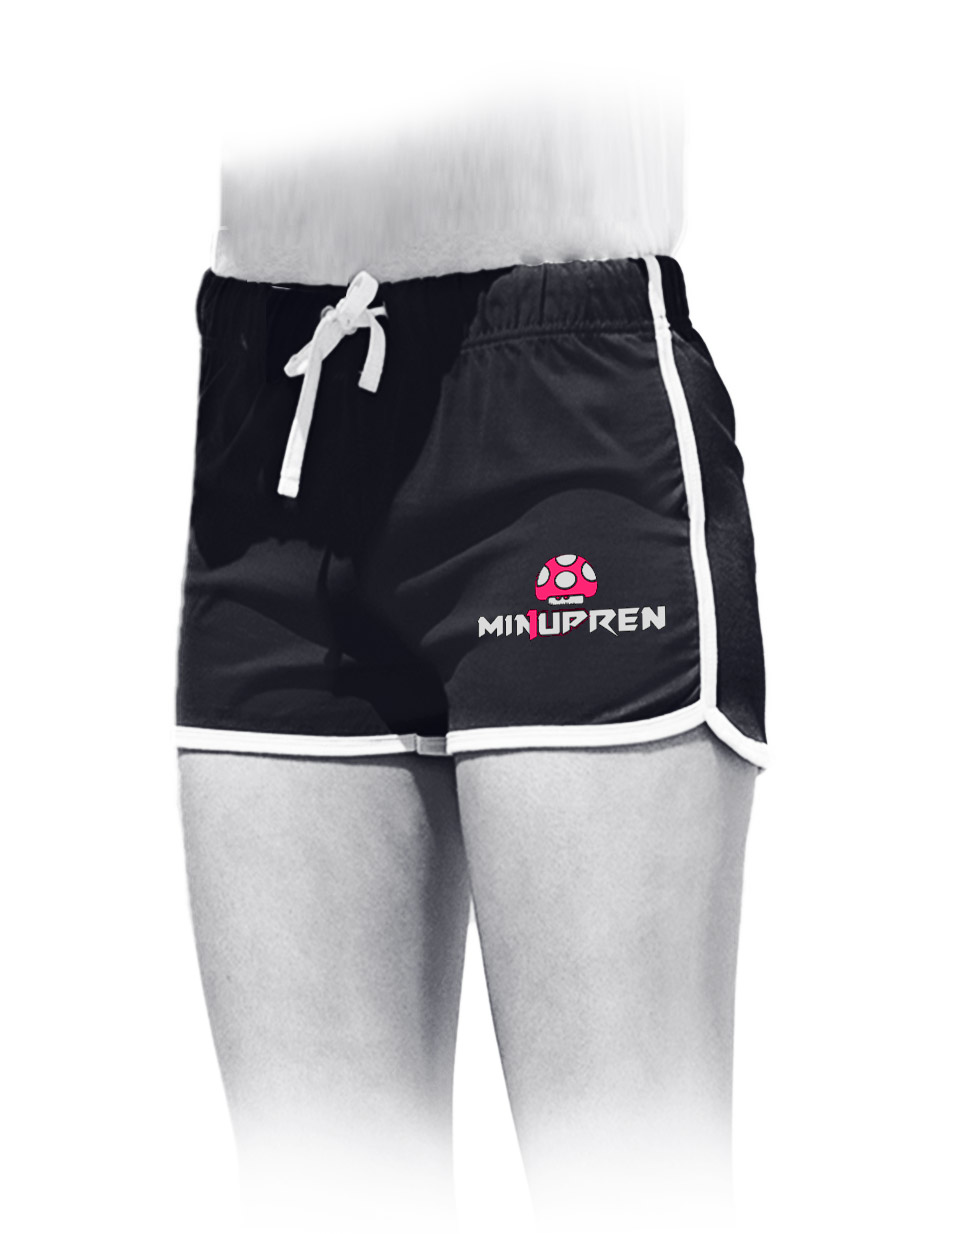 m1nupren Womens Retro Shorts pink/wei auf schwarz